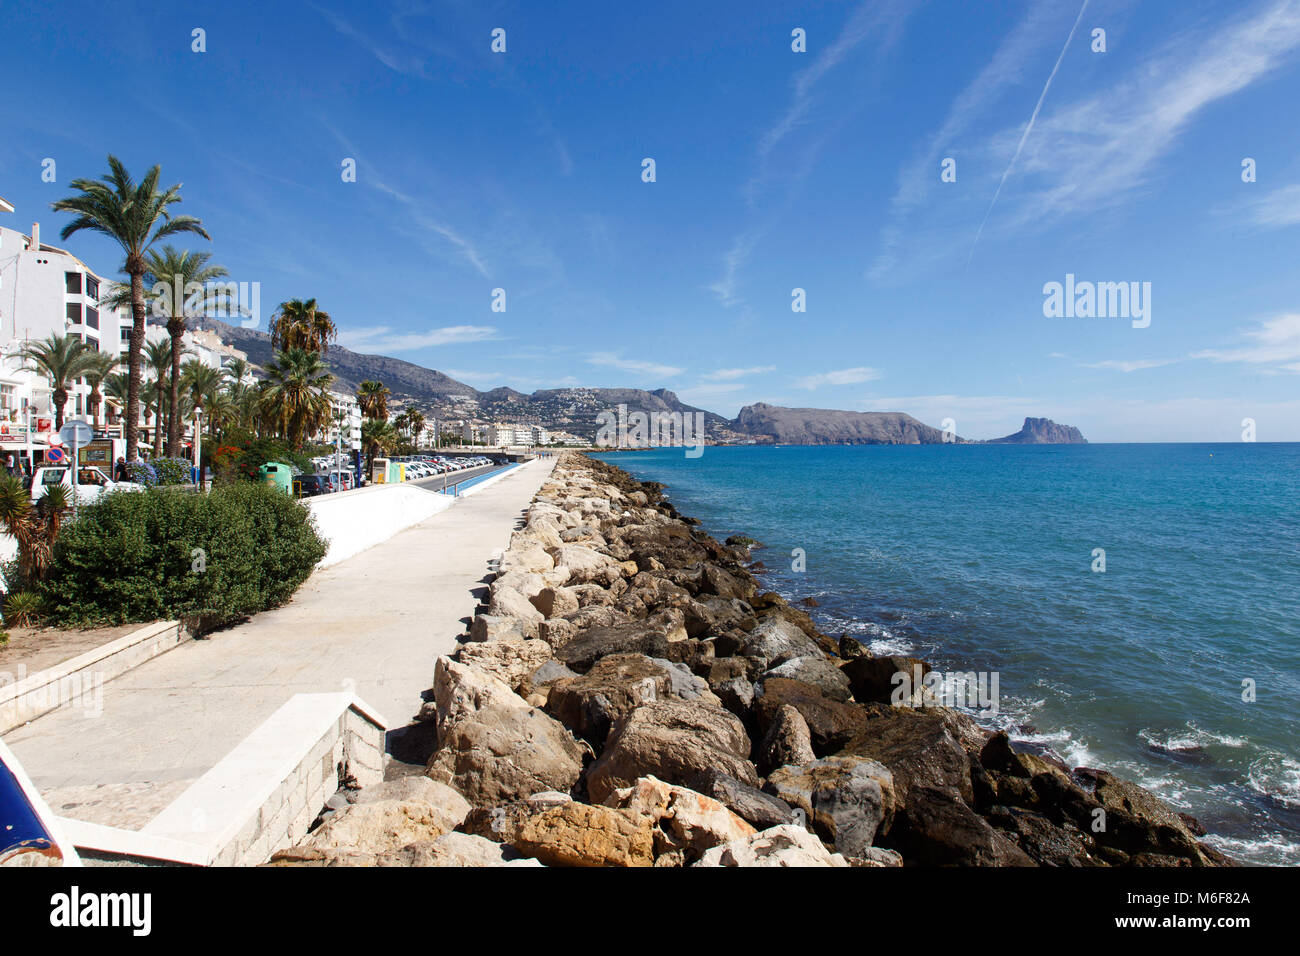 Altea, das Meer. Altea in Spanien, einer der schönsten Städte an der Costa Blanca mit über 15 000 Einwohnern Stockfoto